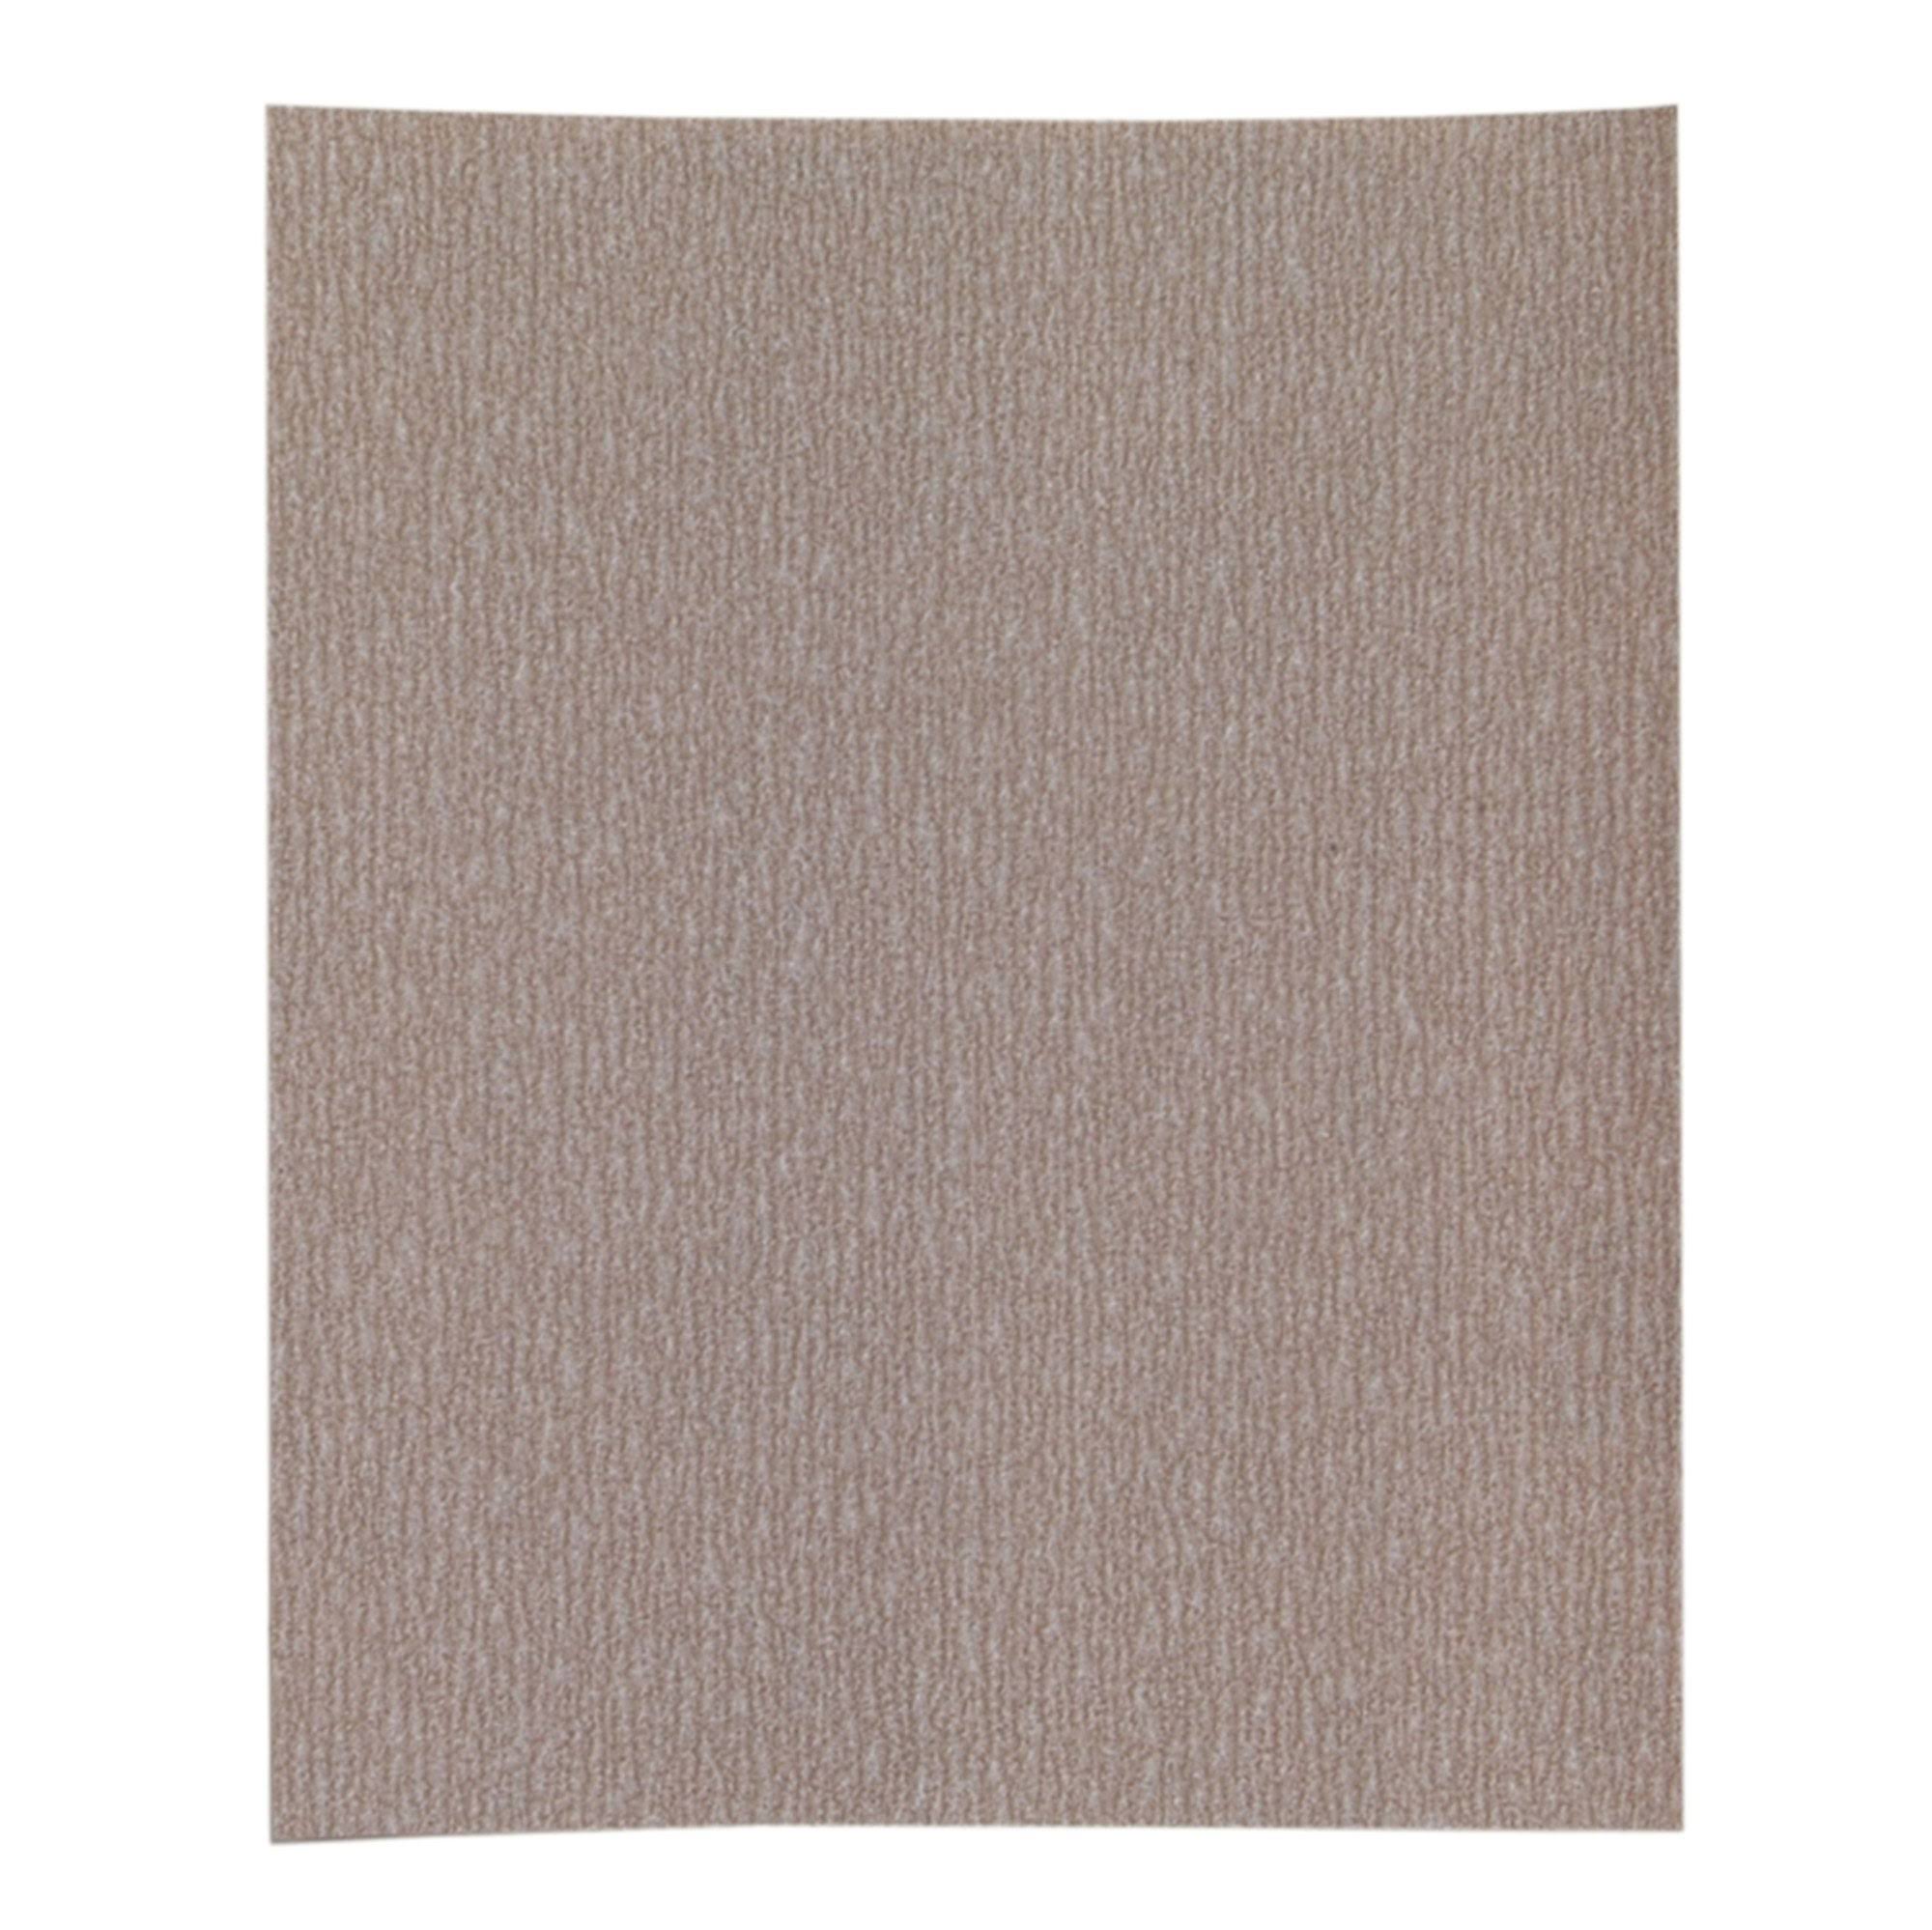 Norton Sanding Sheet, Aluminum Oxide, 150 Grit, 11" L x 9" W